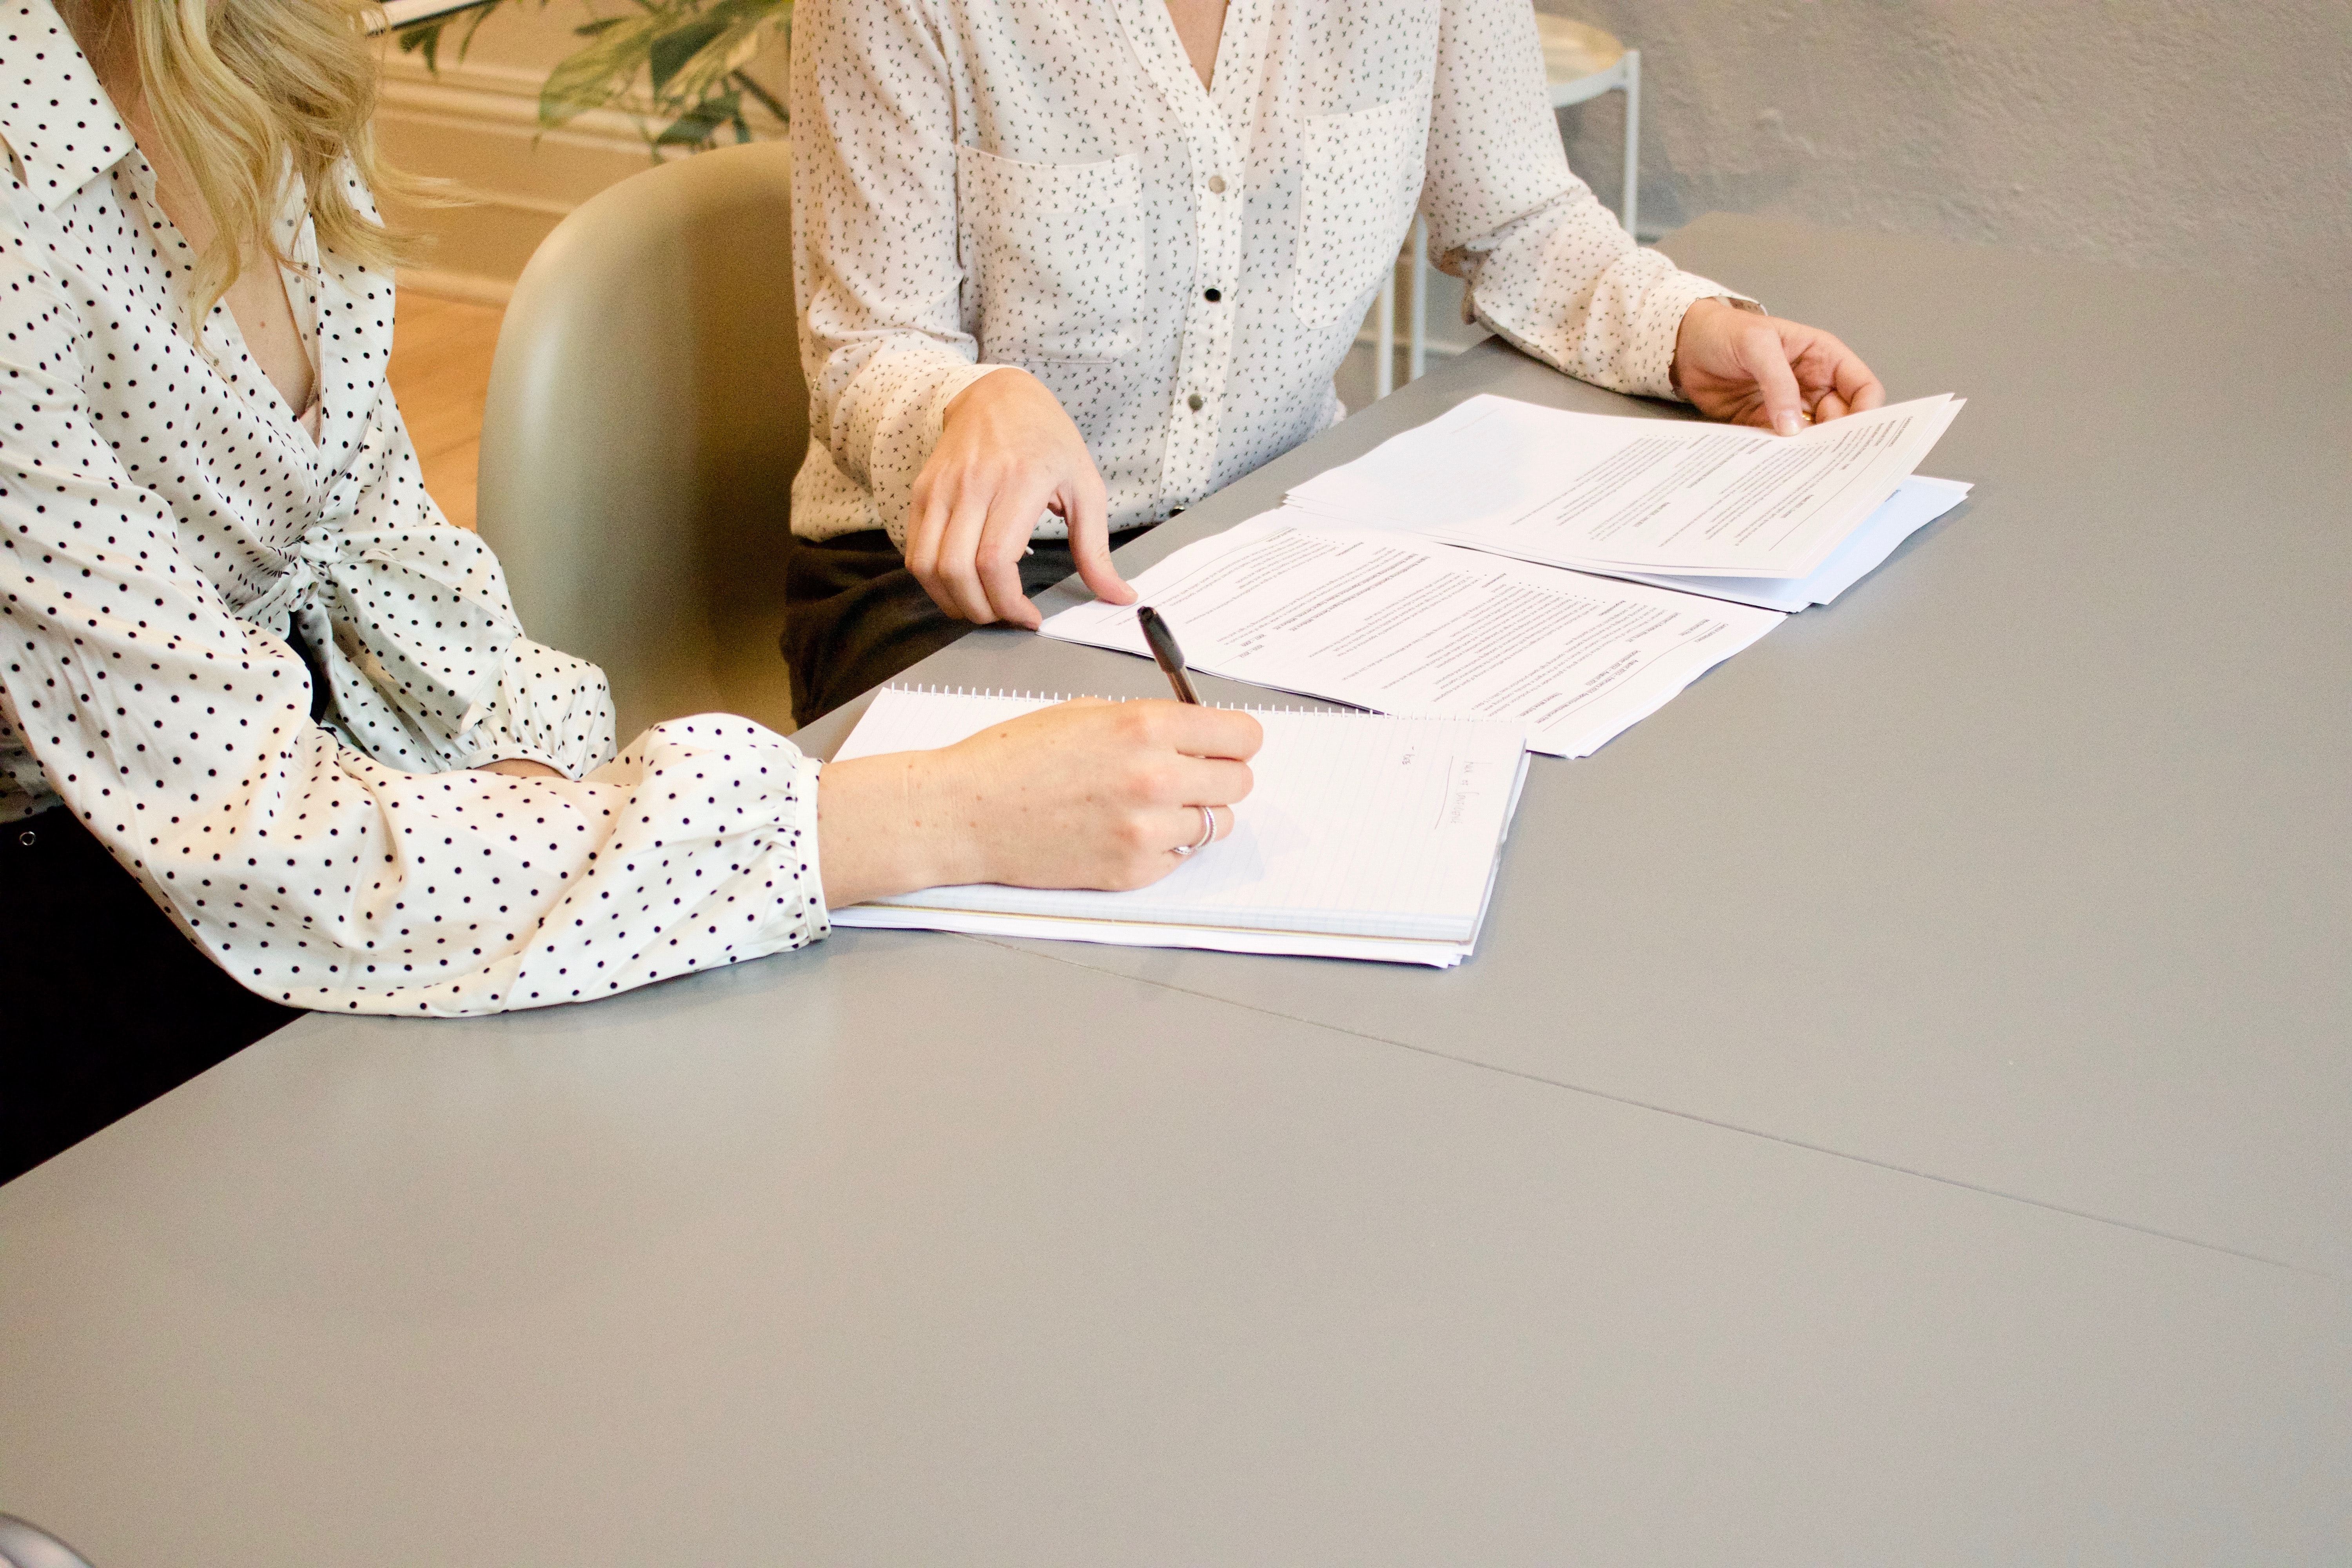 Oberkörper zwei weiblich gelesener Personen, die einander zugewandt sind, sind sichtbar. Beide tragen weiße Blusen und sitzen an einem Tisch auf dem Zettel liegen.